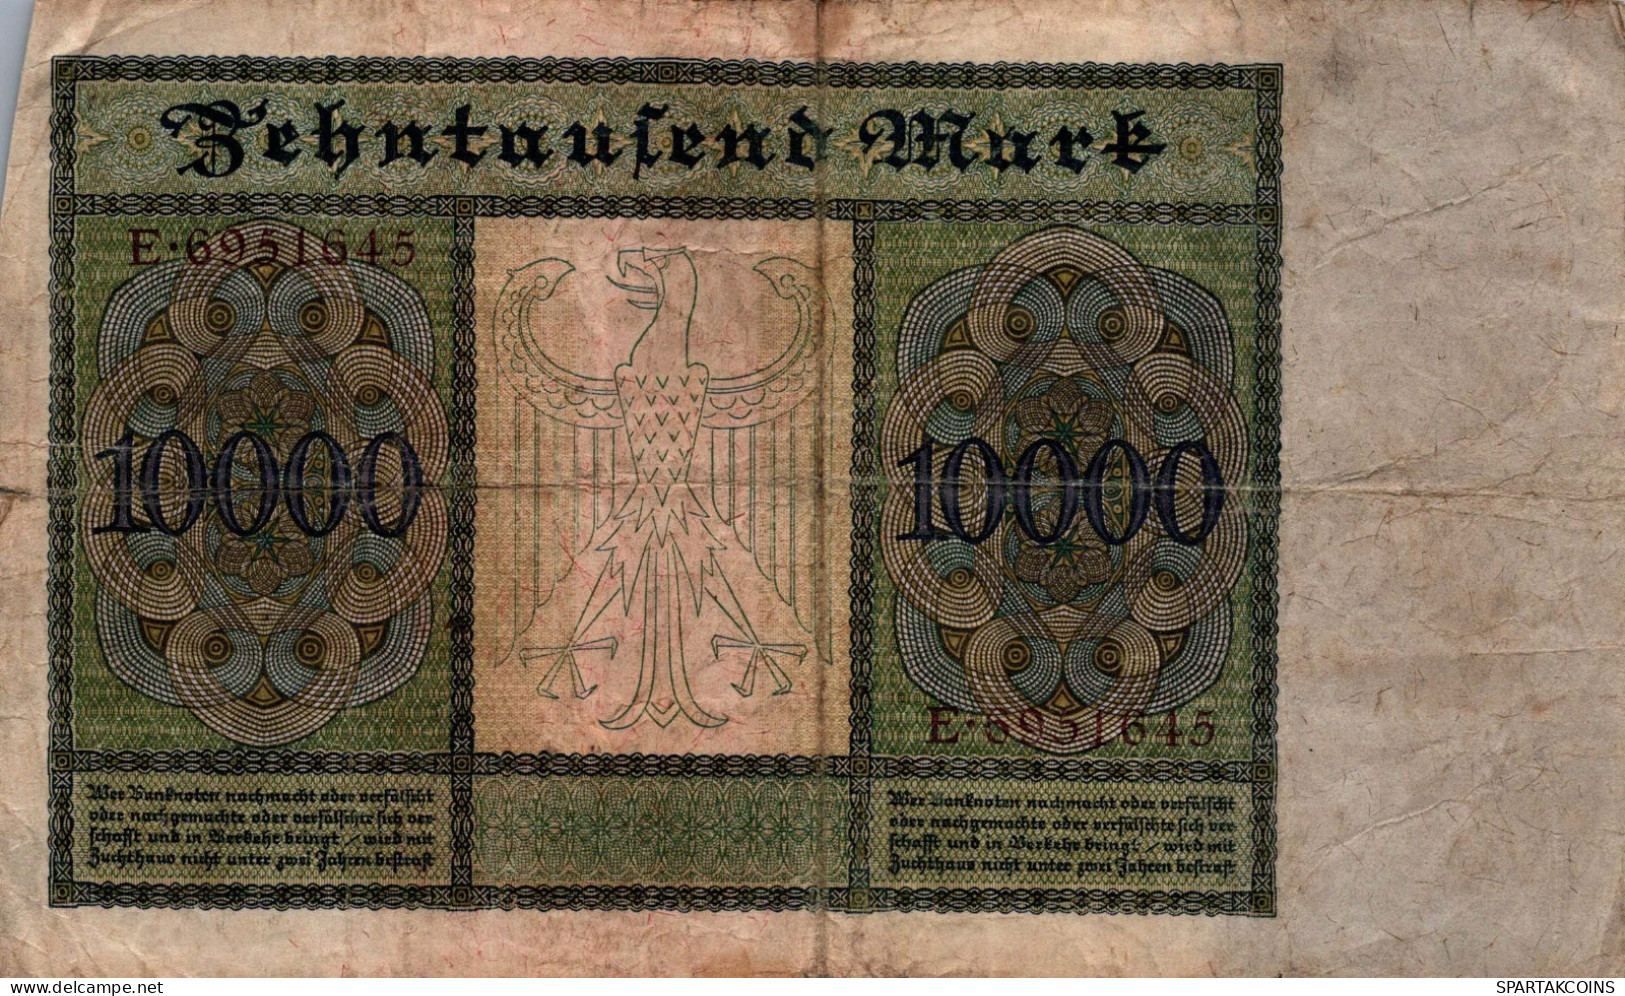 10000 MARK 1922 Stadt BERLIN DEUTSCHLAND Papiergeld Banknote #PL164 - [11] Local Banknote Issues